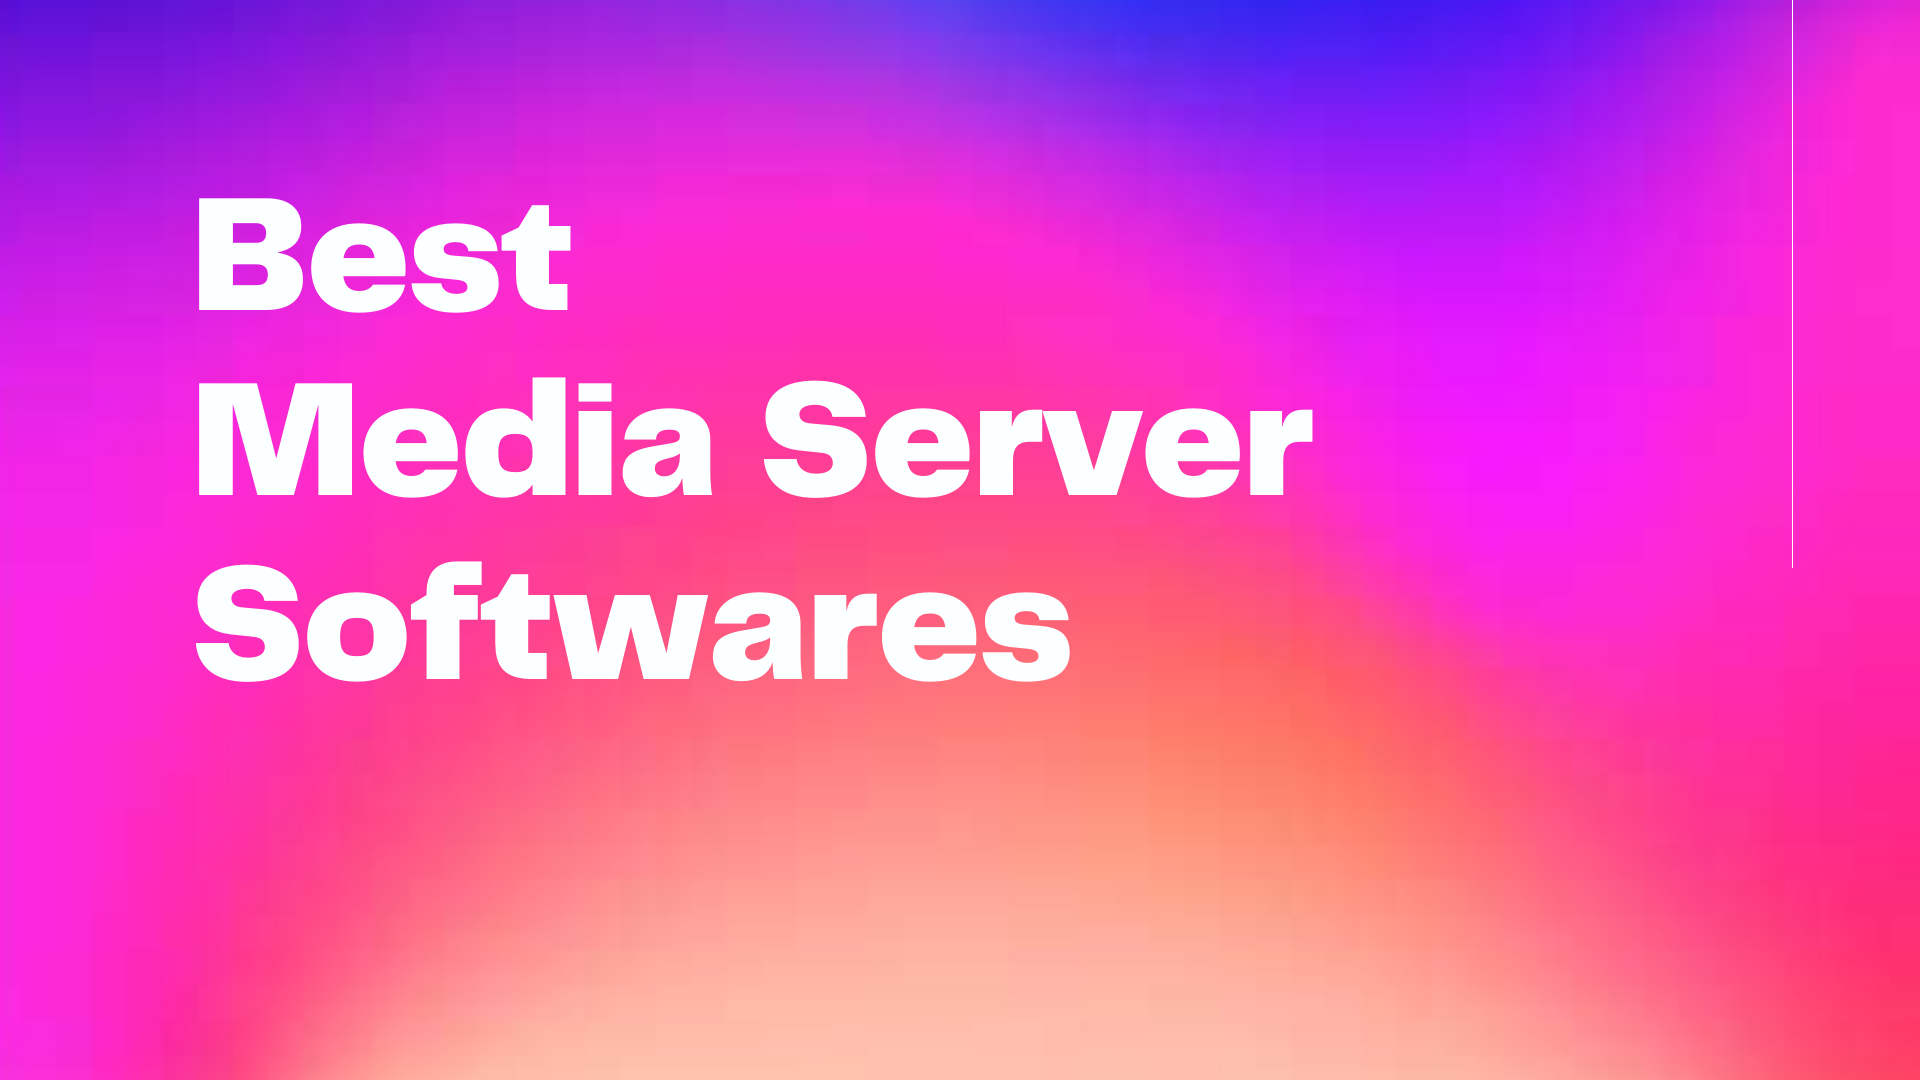 Best Media Server Softwares